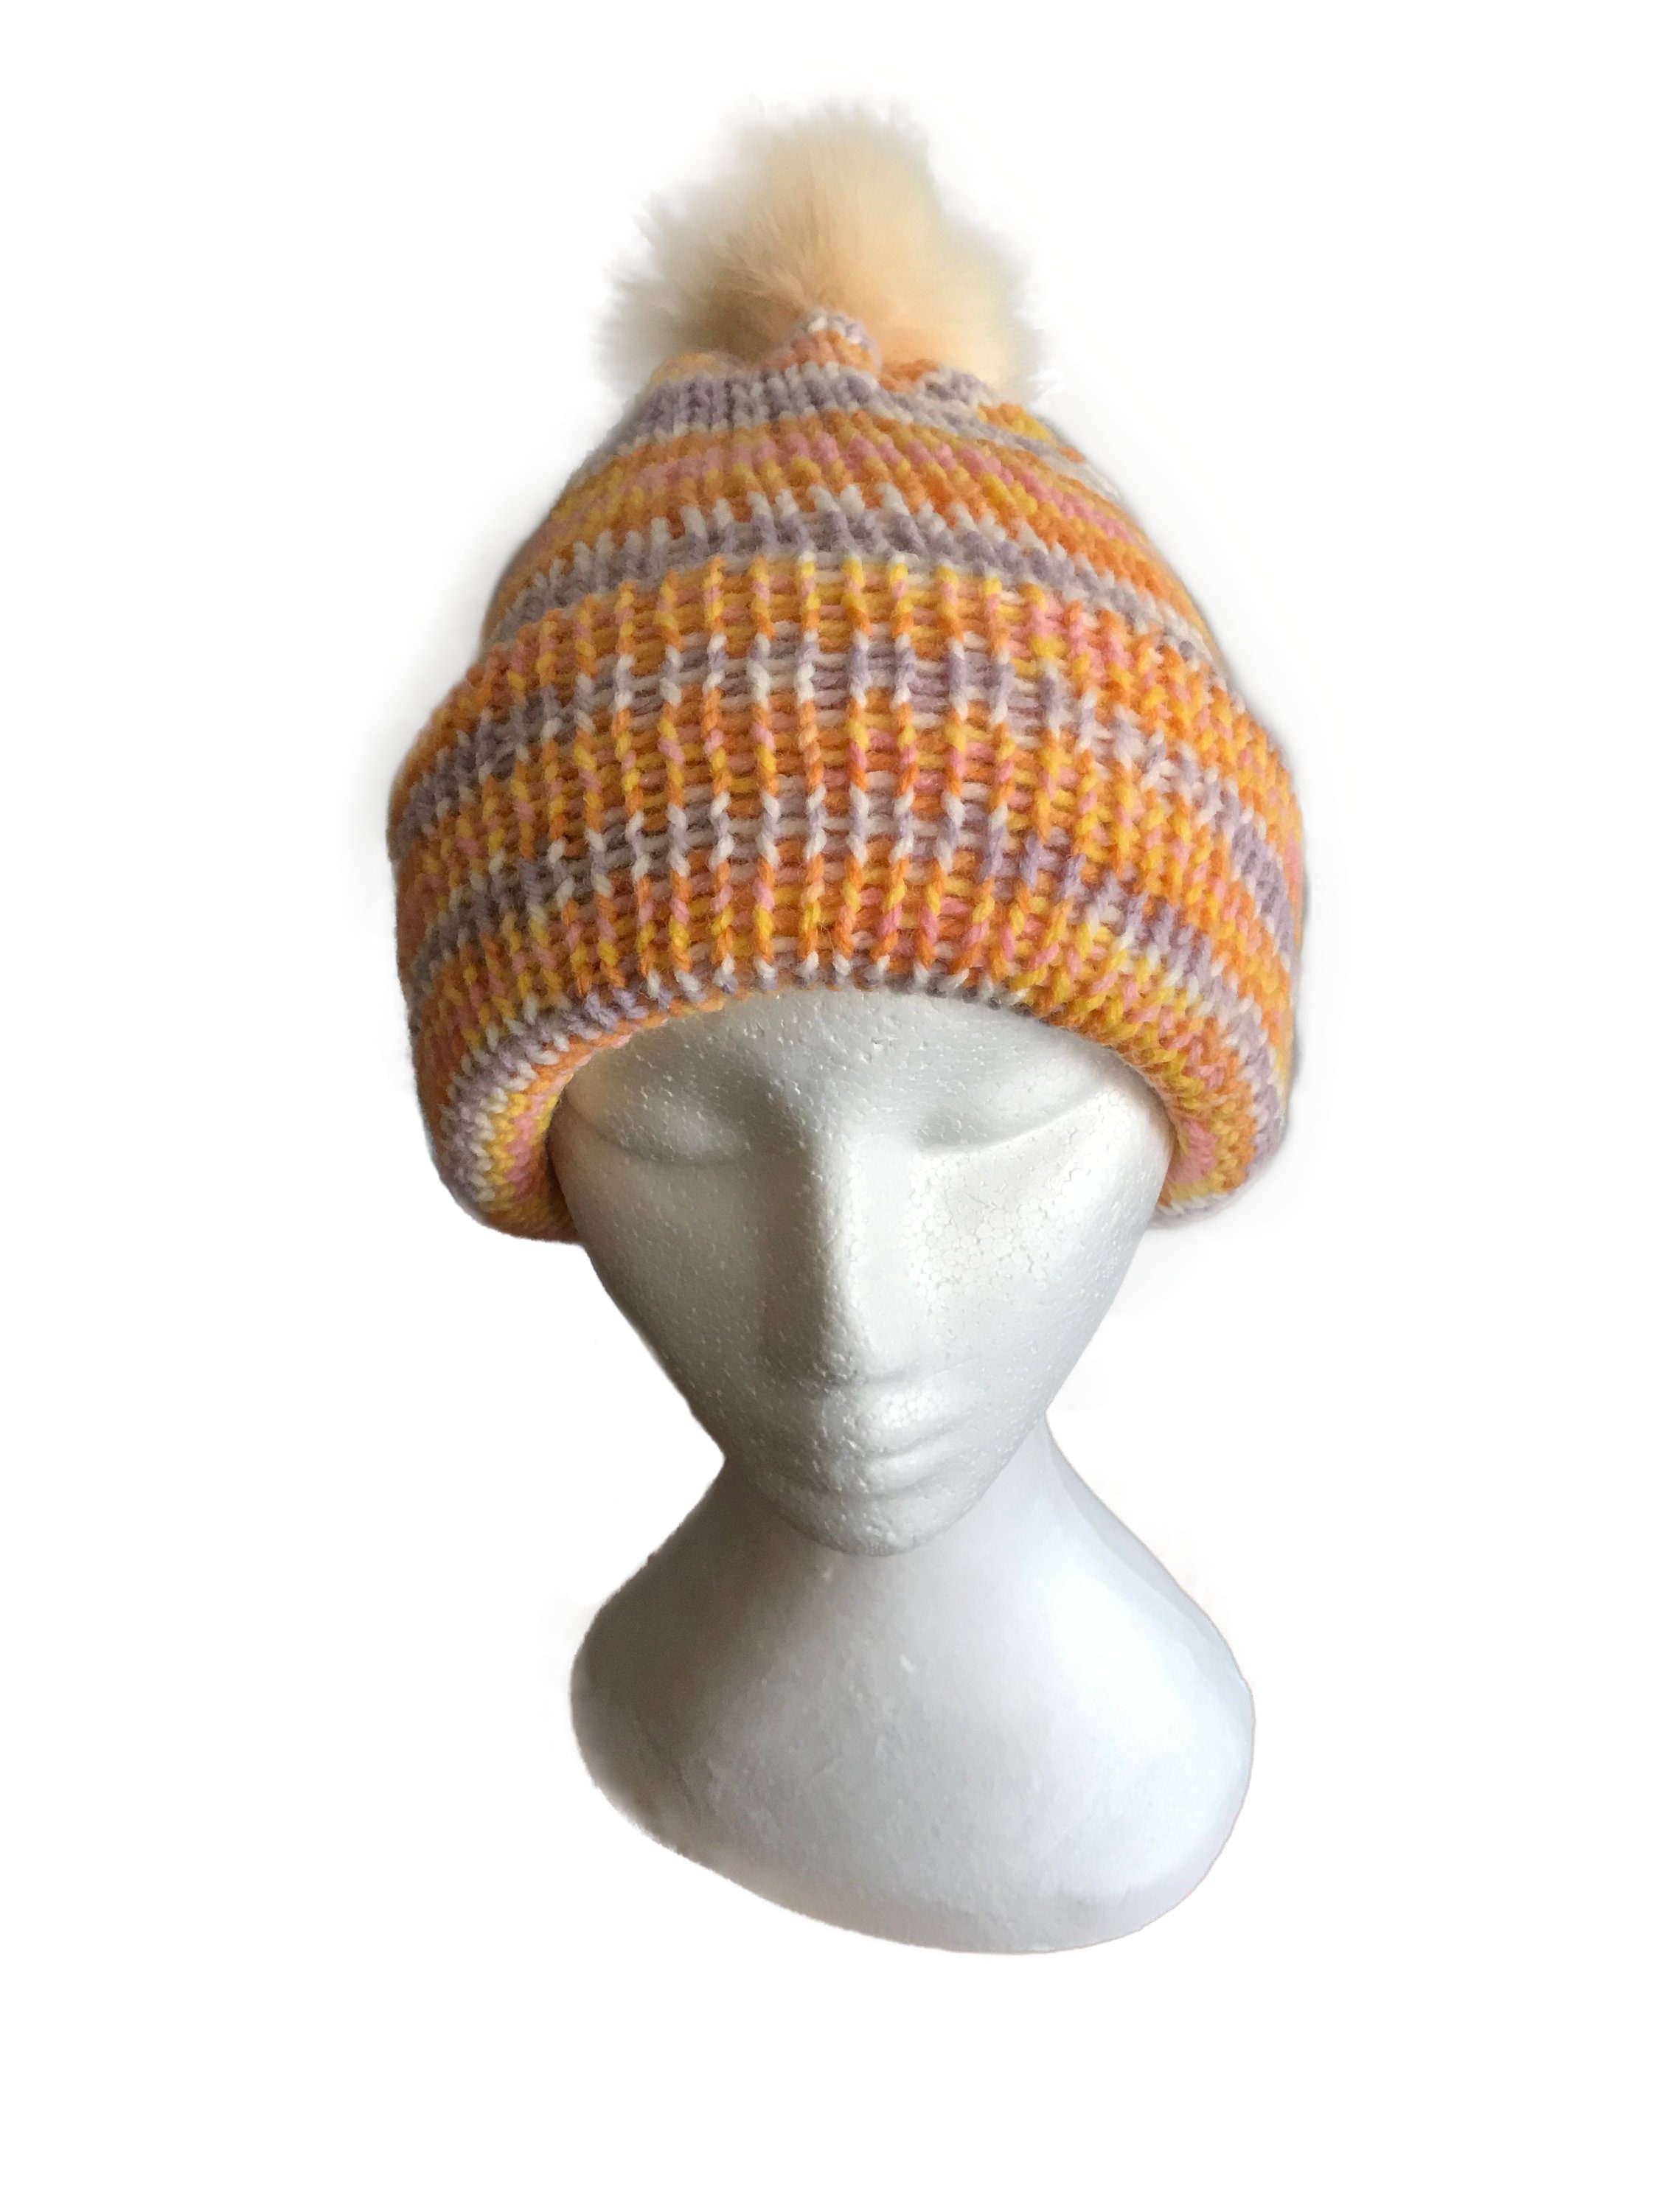 Knitted Orange Beanie Hat Winter Beanie Hat Striped Beanie - Etsy UK